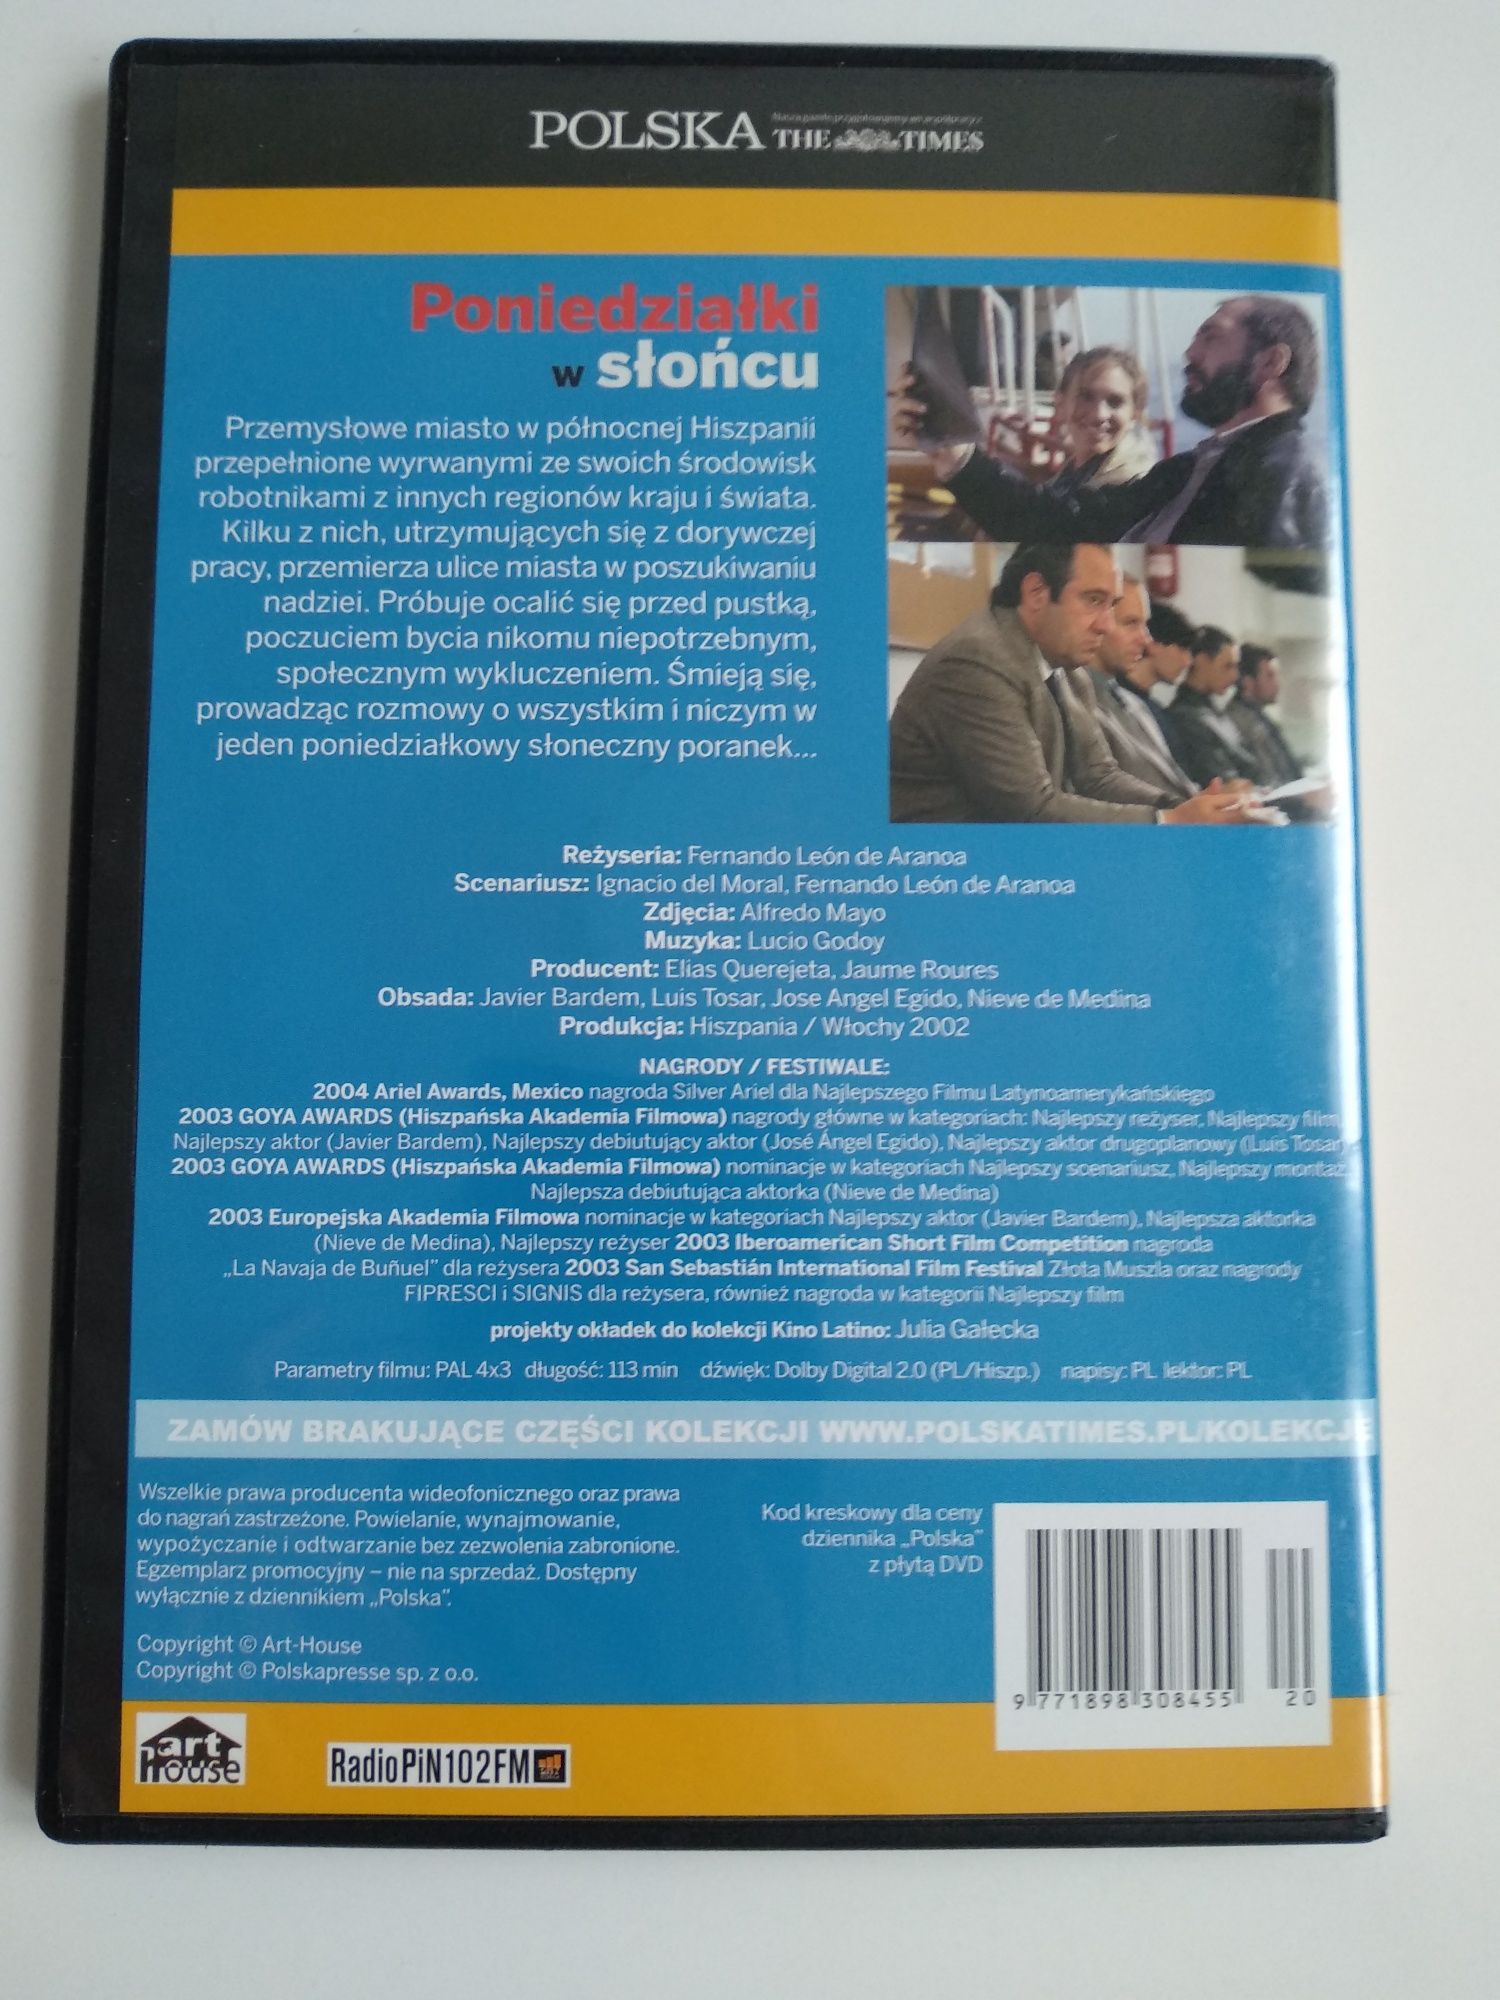 Poniedziałki w słońcu - reż. Fernando León de Aranoa - DVD